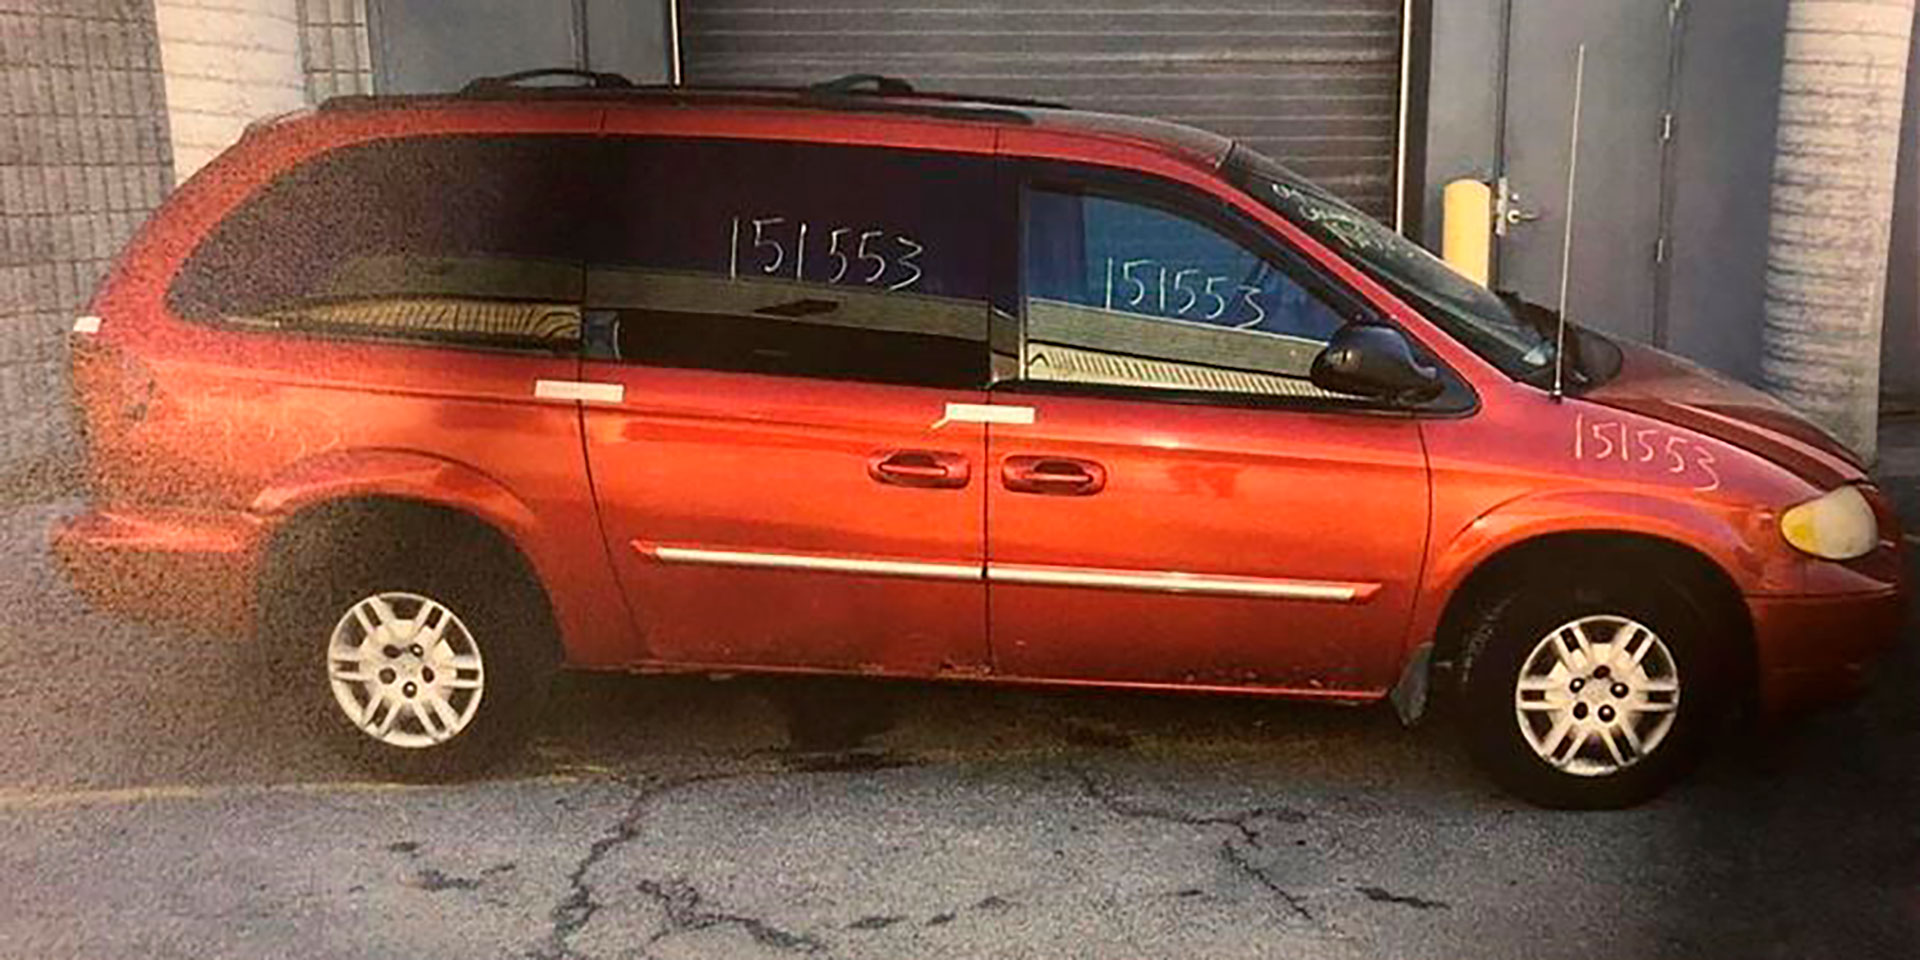 La Dodge Caravan roja, modelo 2004 del asesino serial. Cuando la policía logró conectar el vehículo con los crímenes, el tiempo comenzó a correr en contra para McArthur